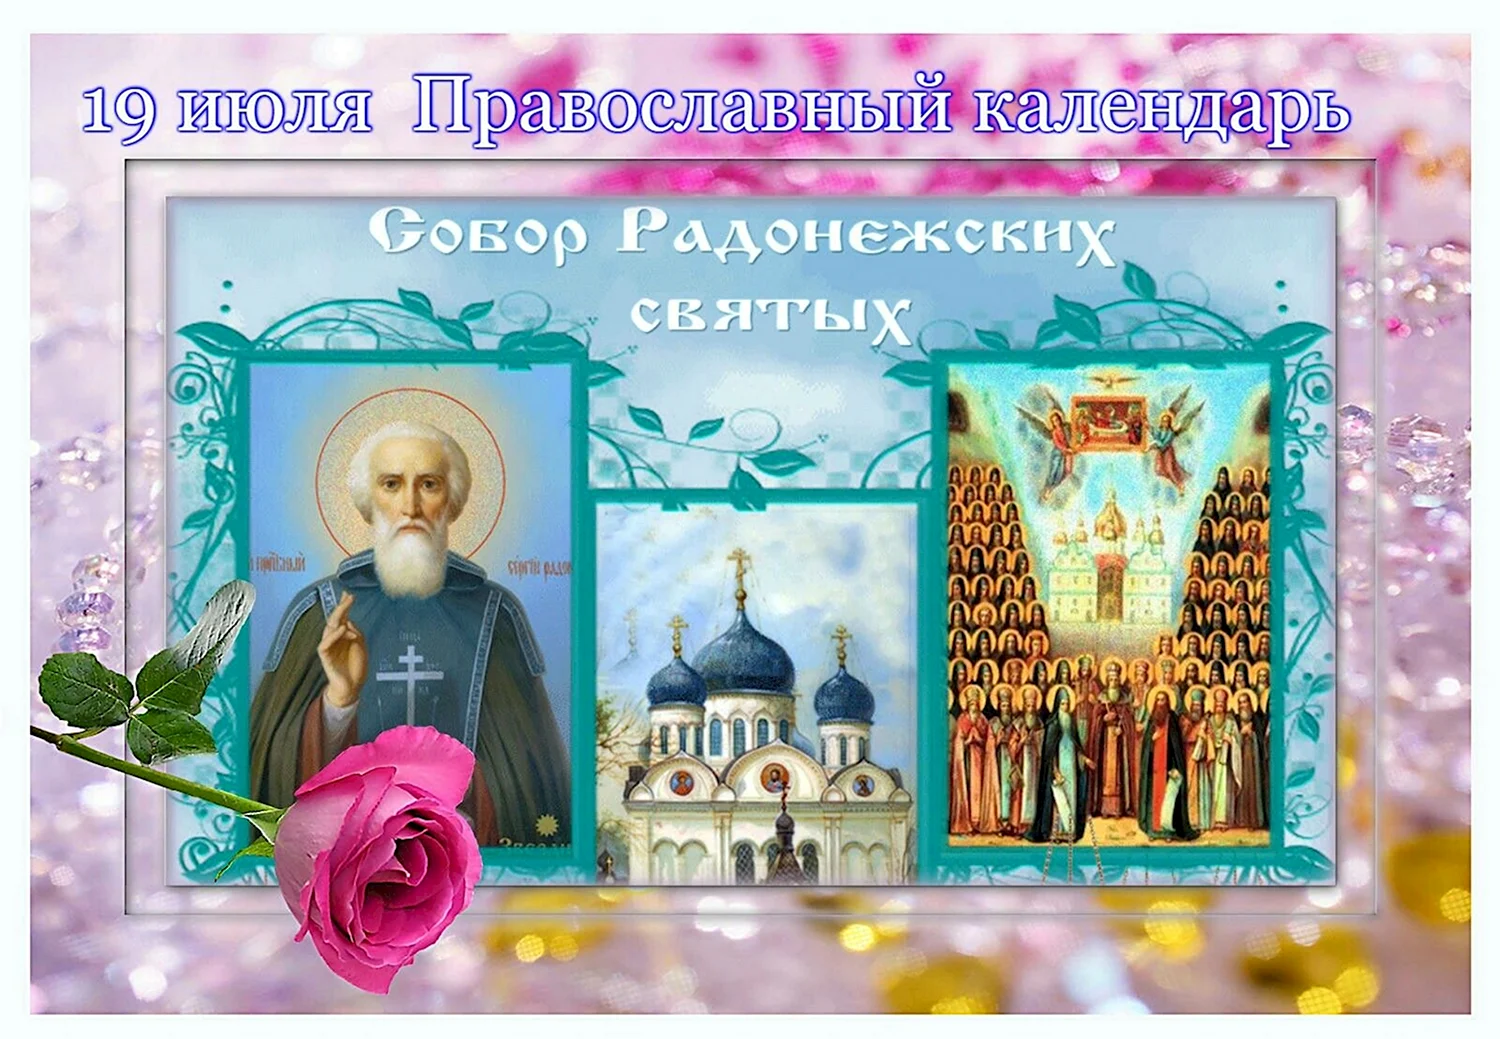 Празднование собора Радонежских святых 19 июля открытки